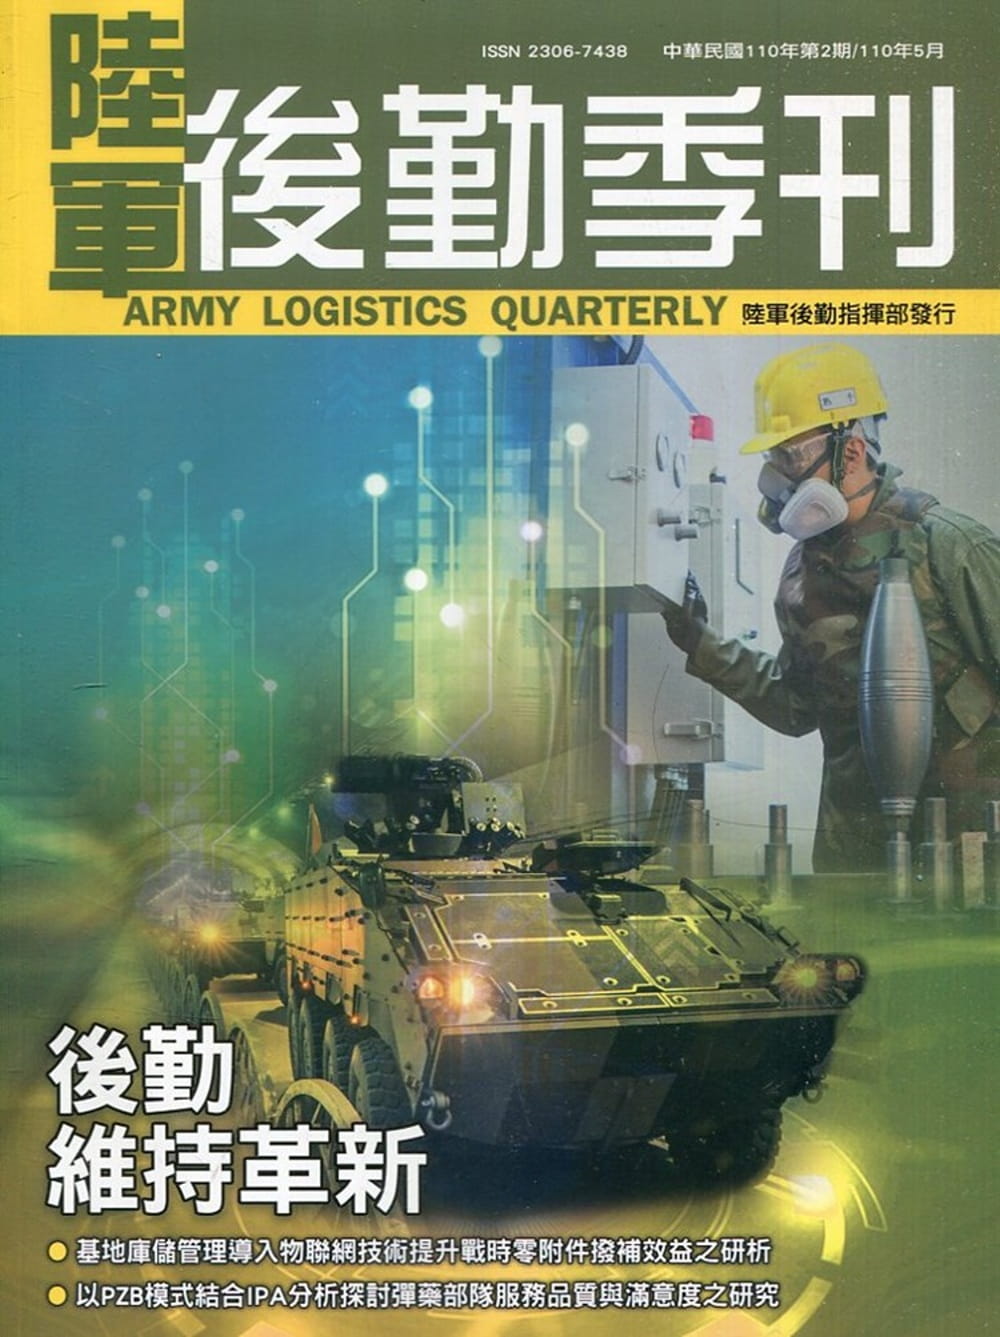 陸軍後勤季刊110年第2期(2021.05)後勤維持革新